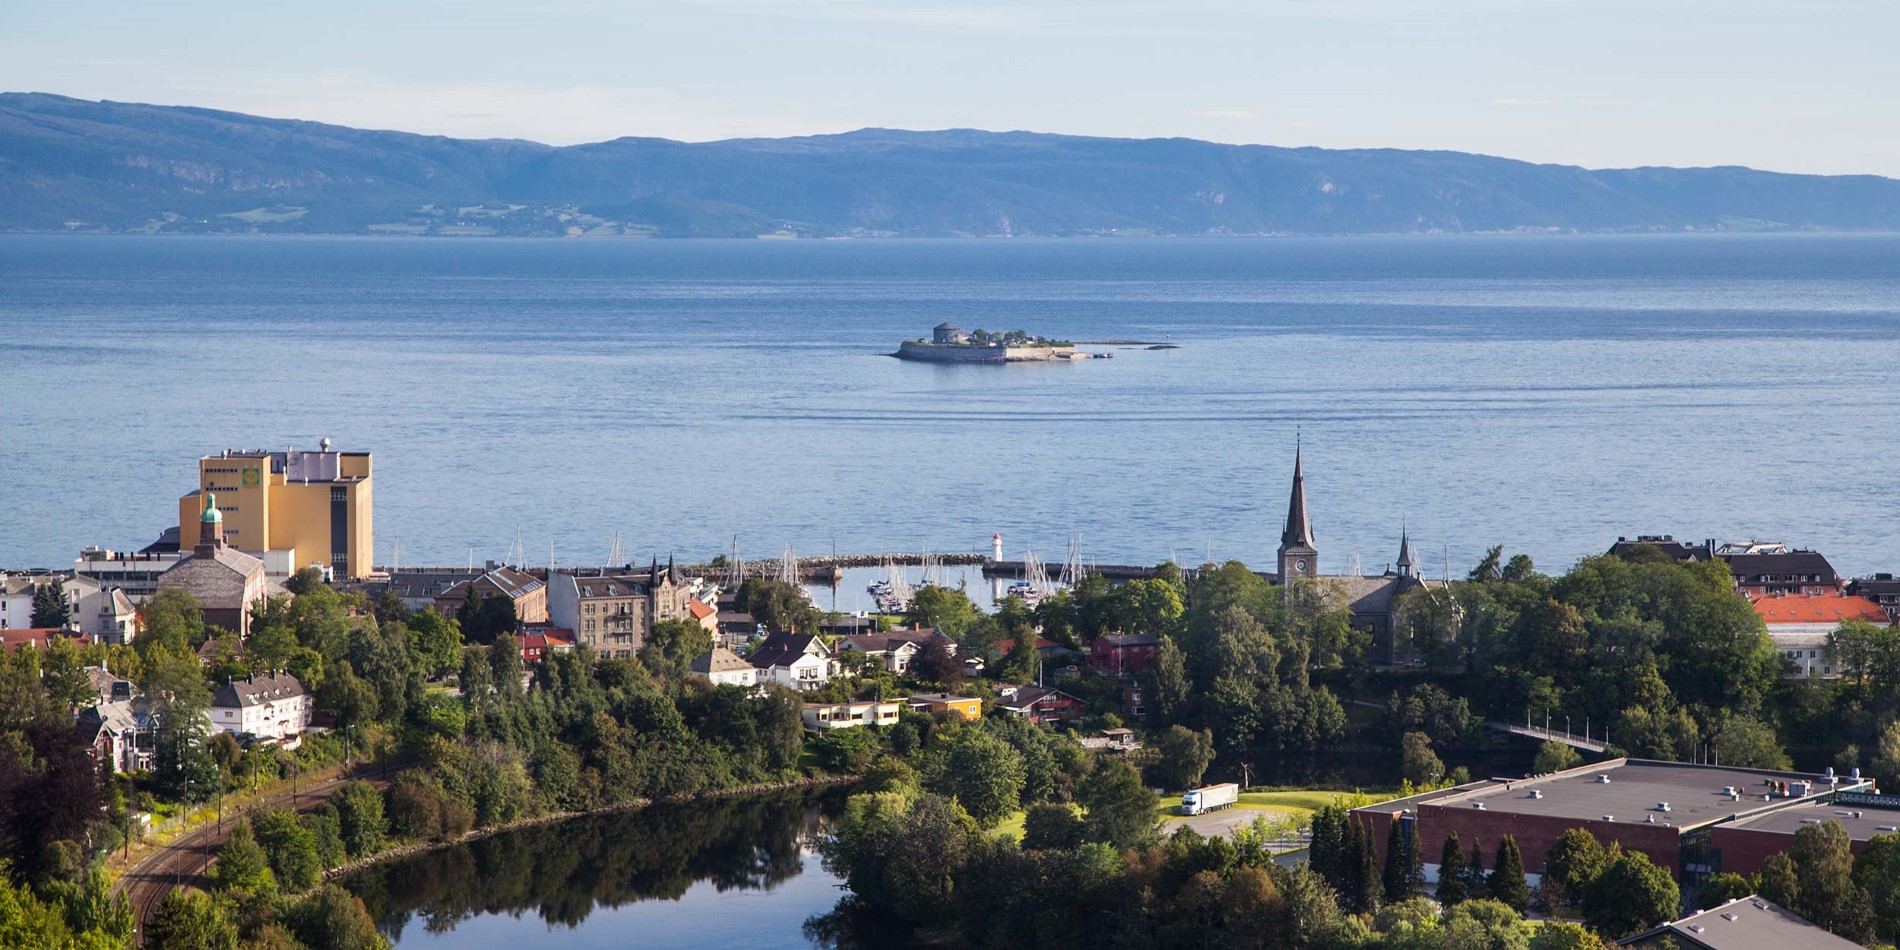 Trondheimsfjorden är Norges tredje längsta Fjord